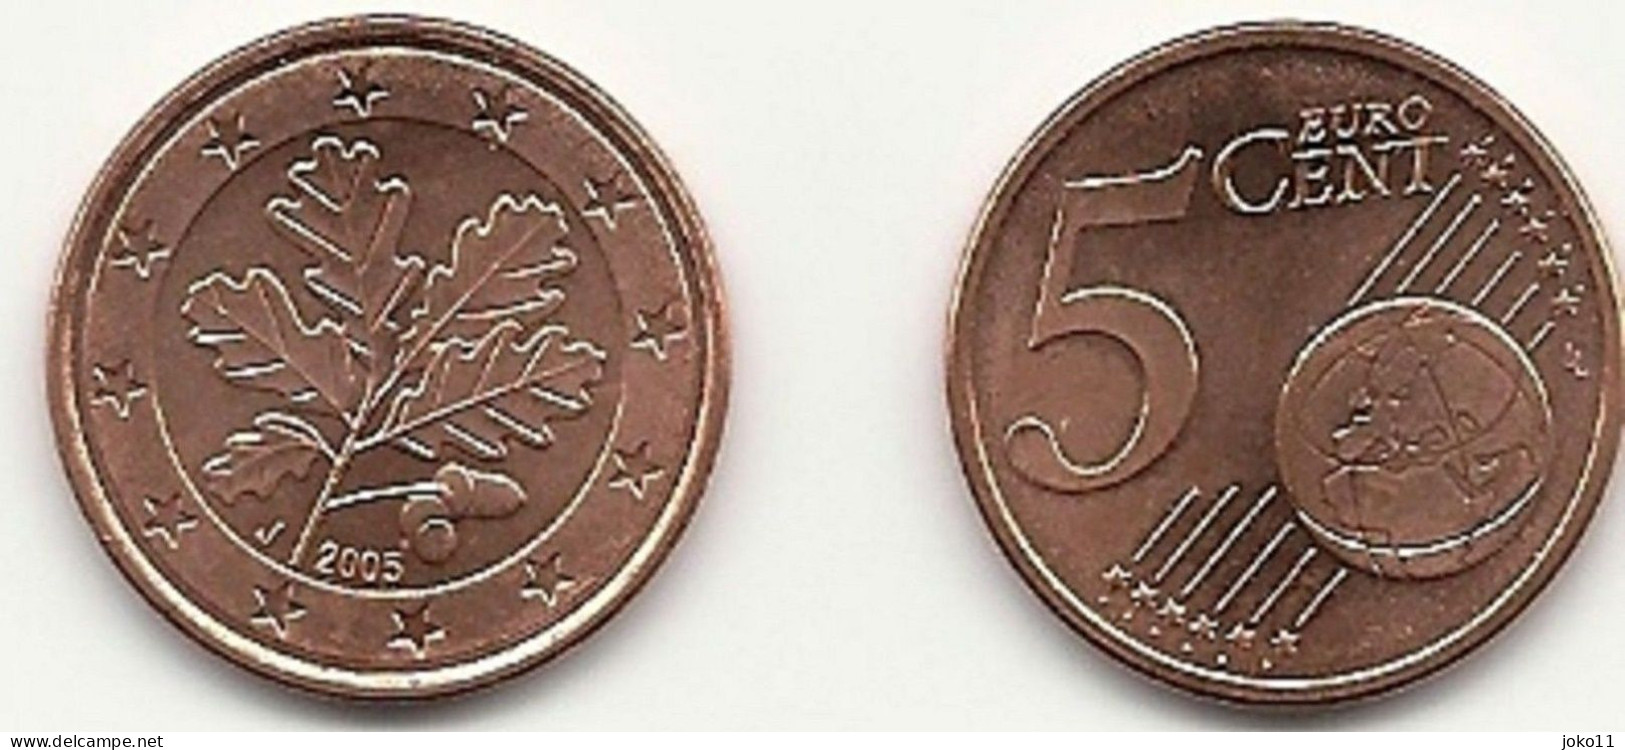 5 Cent, 2005 Prägestätte (J) Vz, Sehr Gut Erhaltene Umlaufmünze - Germany